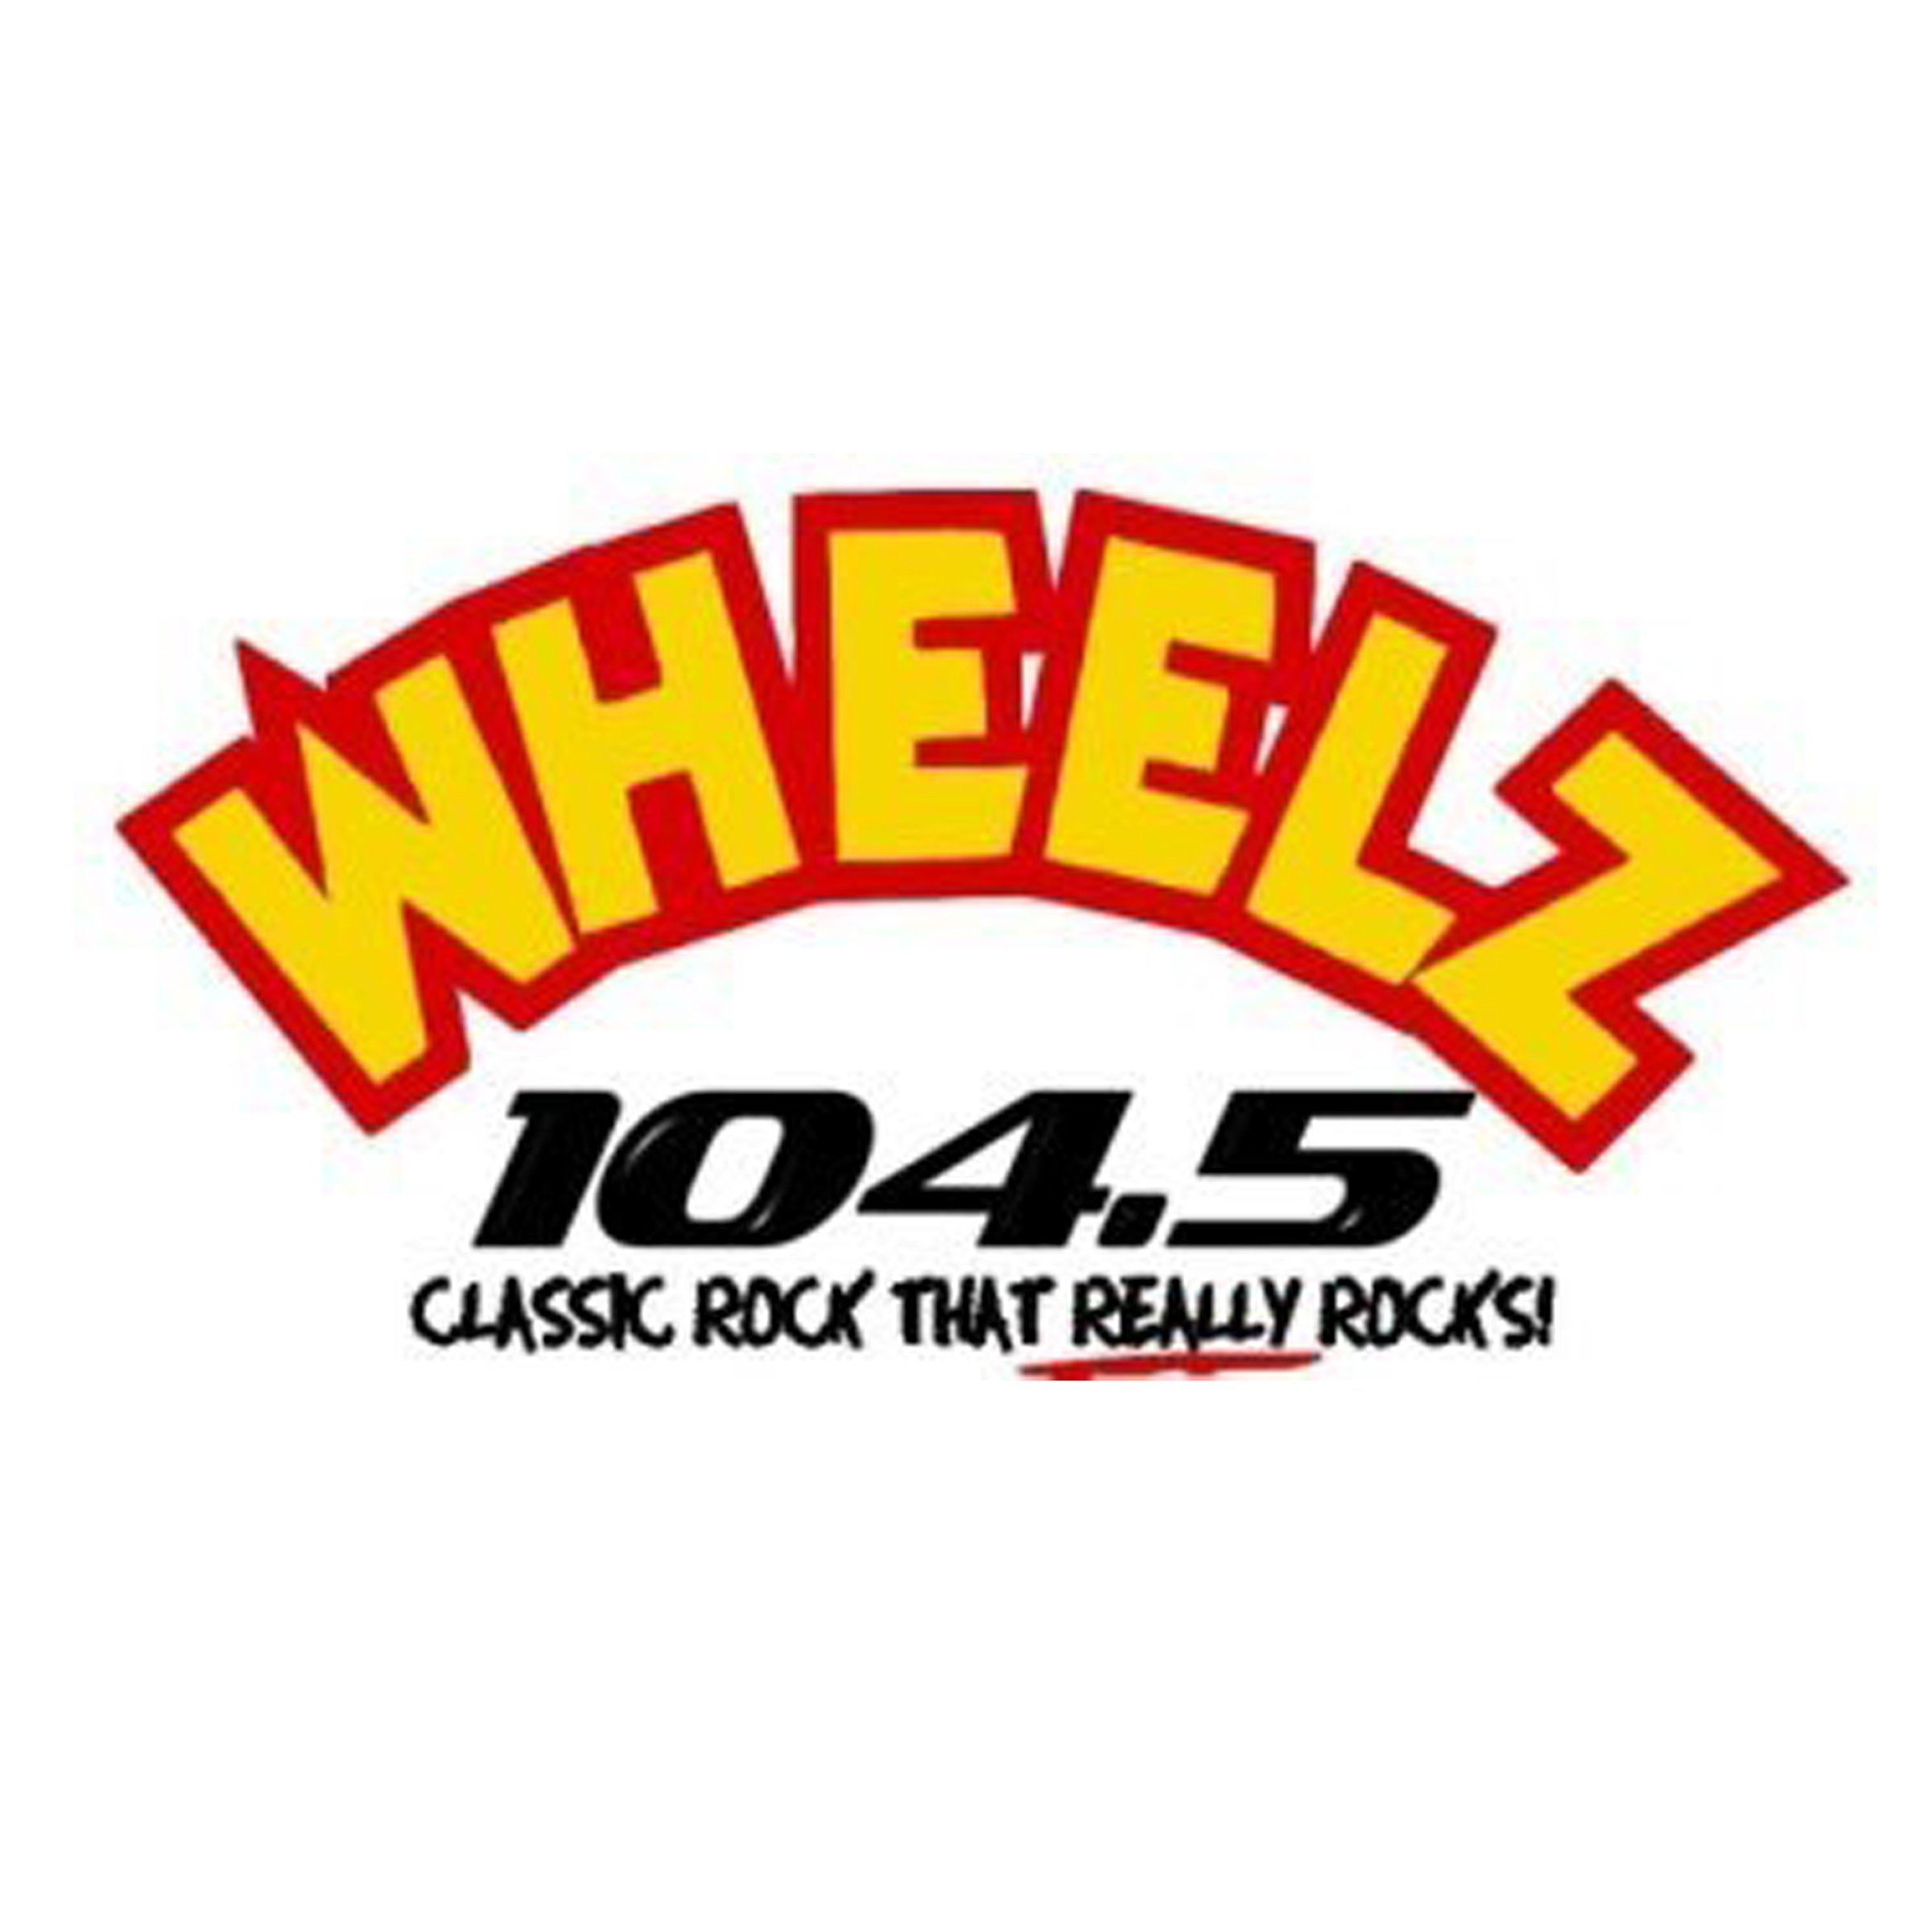 Wheelz - Web.jpg